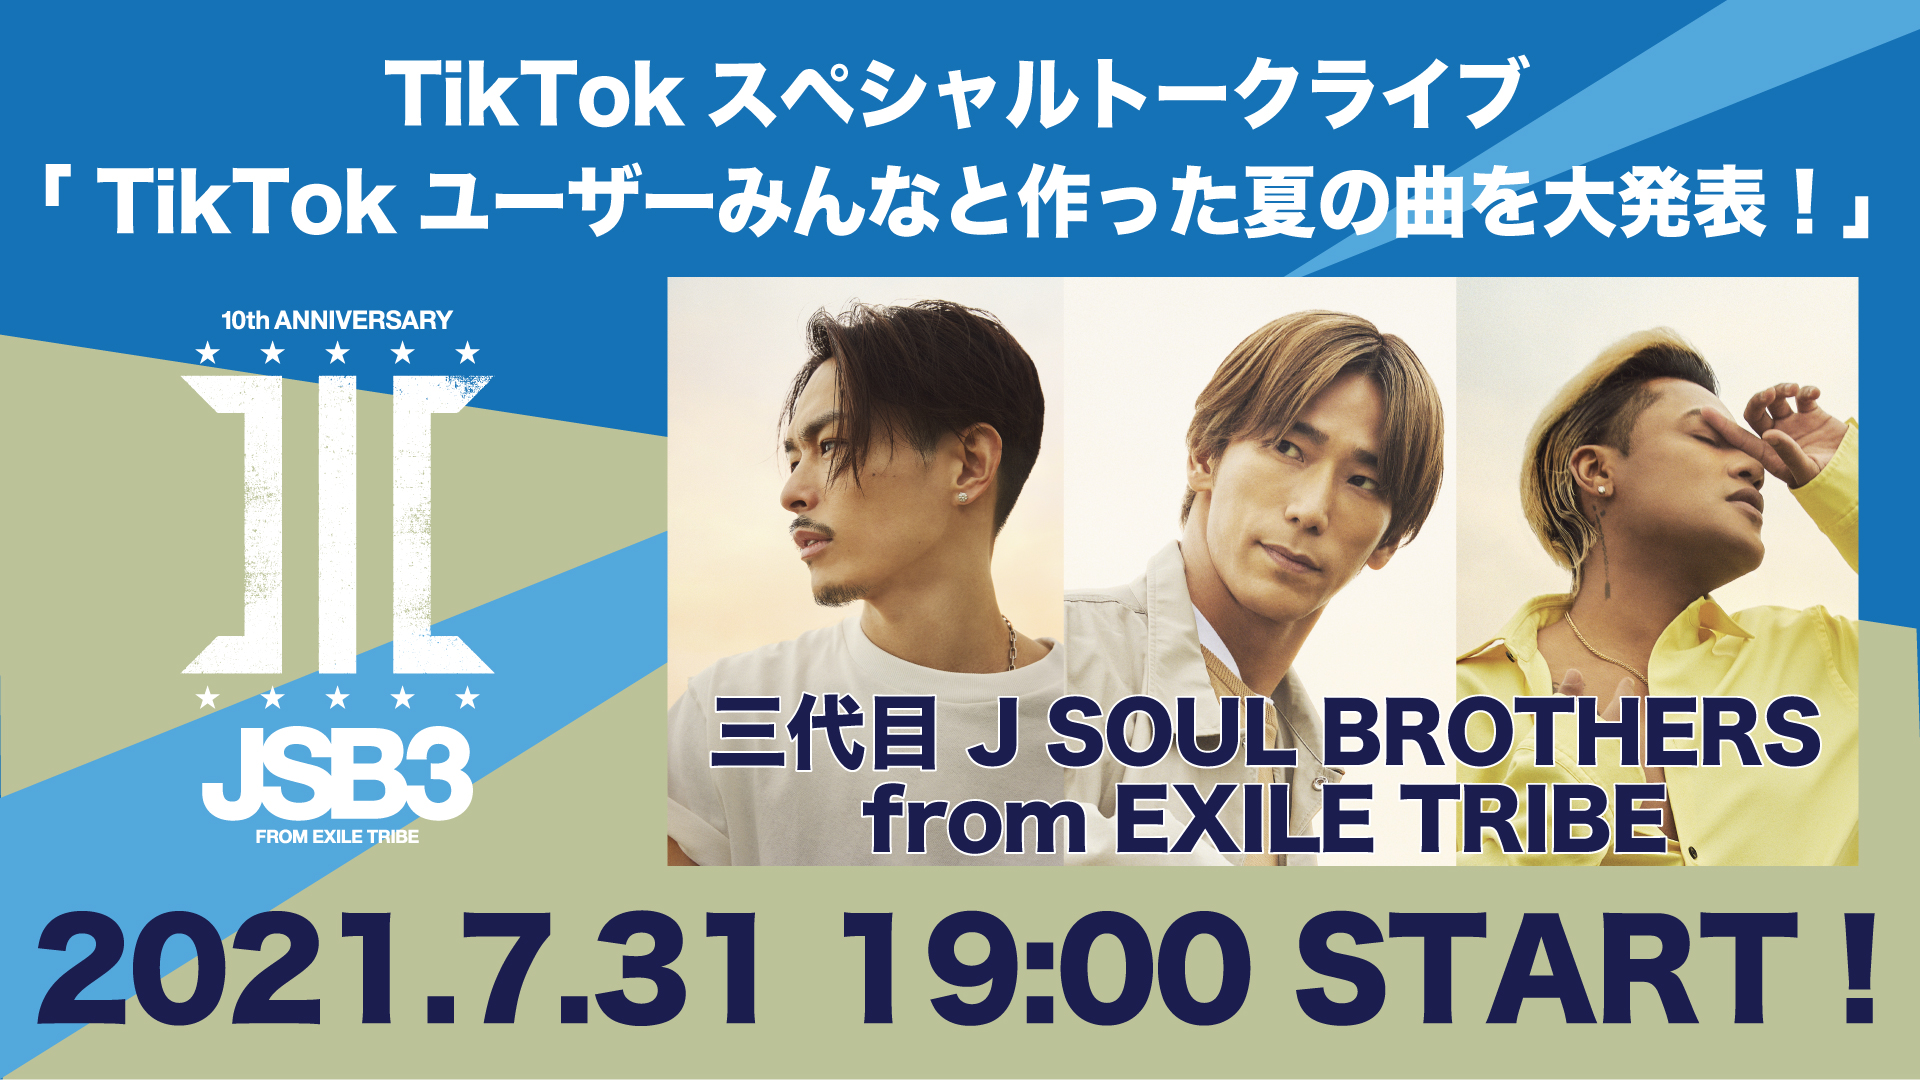 三代目 J Soul Brothers がtiktokユーザーと一緒に作った夏の新曲を スペシャルトークライブで初解禁 Bytedance株式会社のプレスリリース